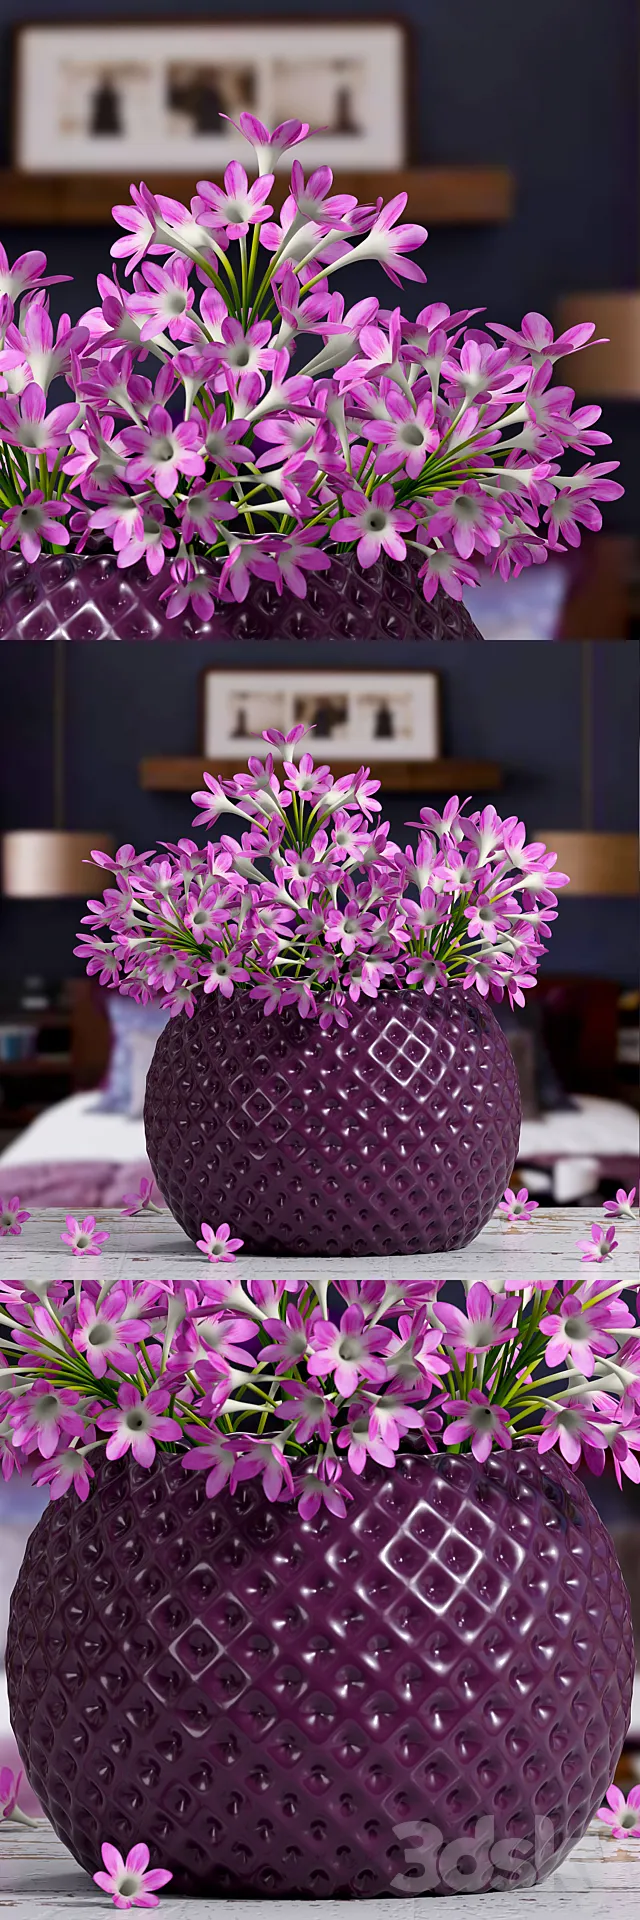 Pink flower vase 3DSMax File